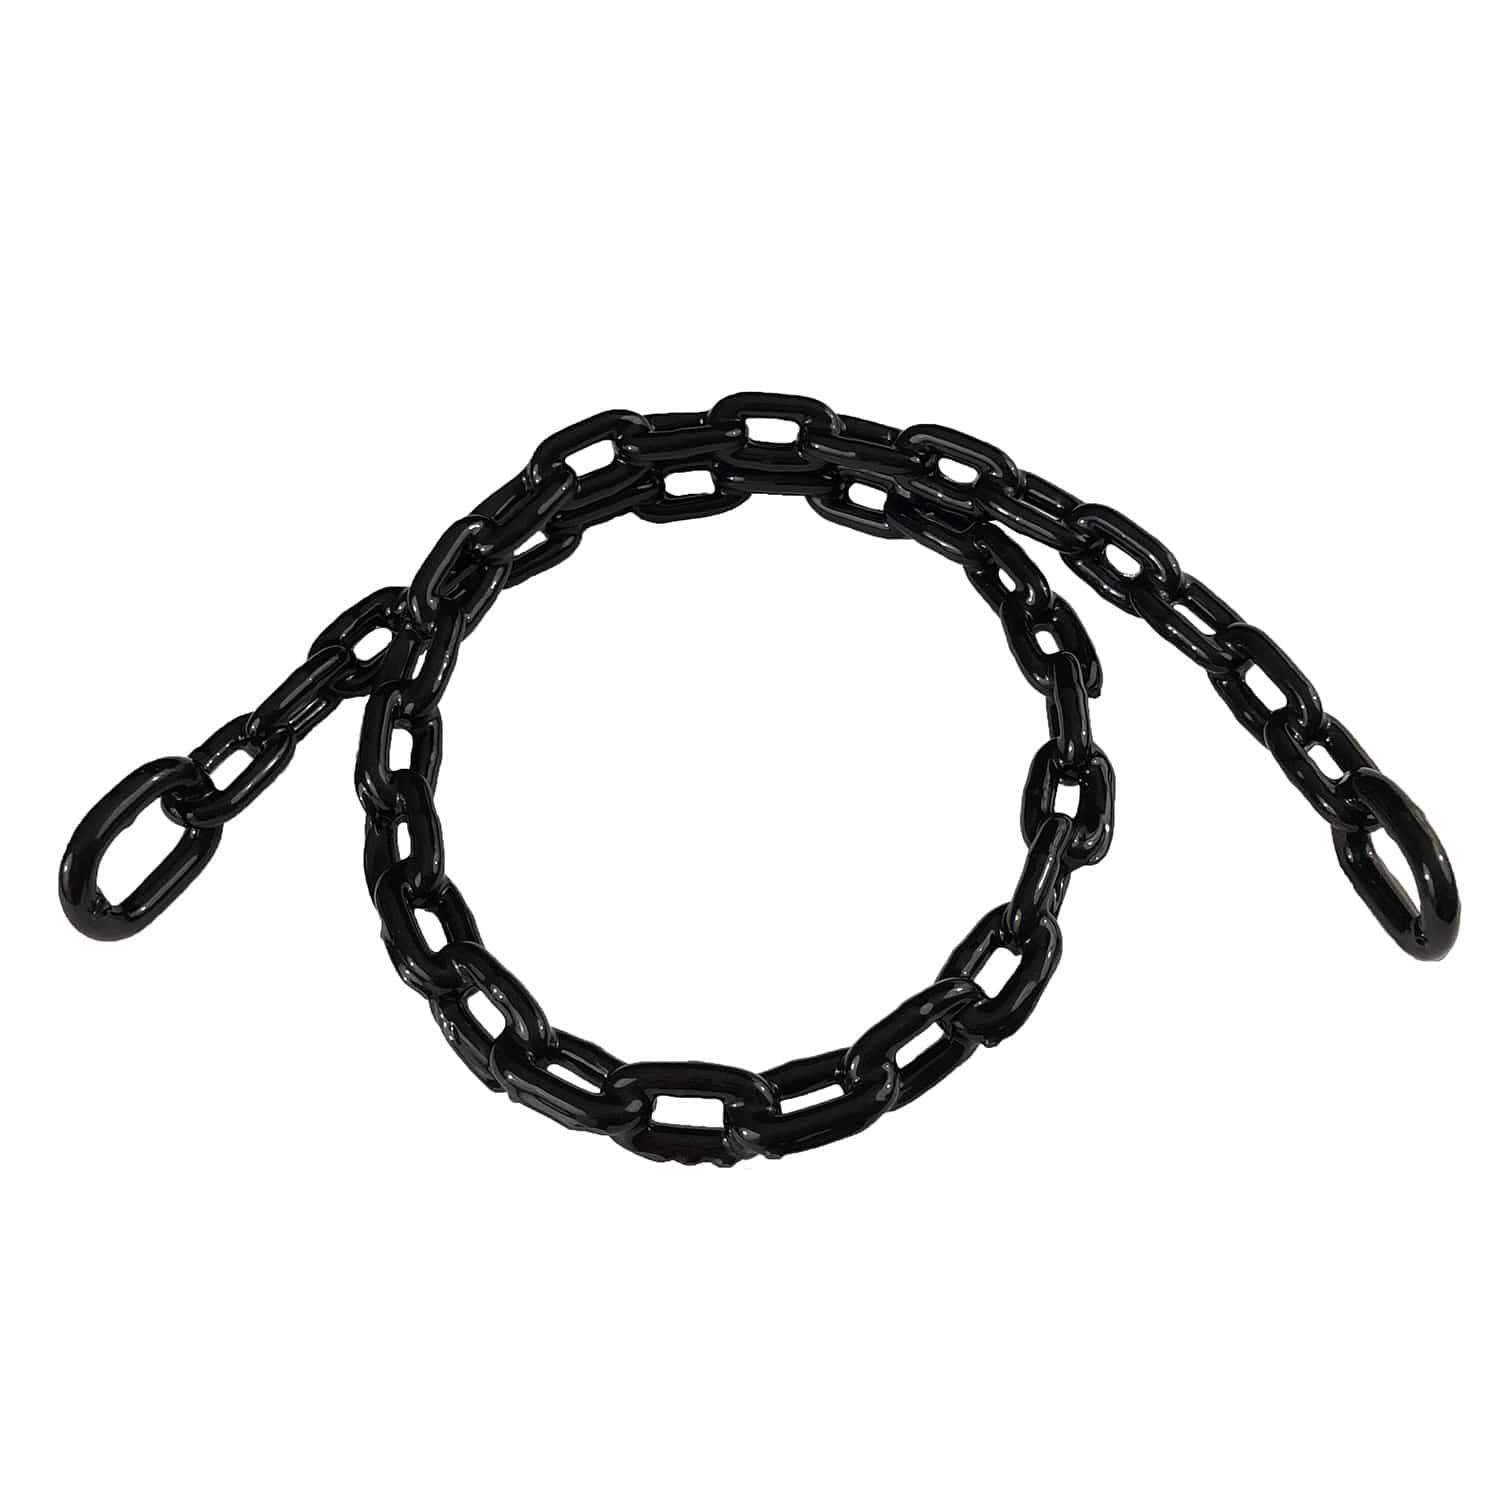 Greenfield 2115-B 1/4" X 4' Anchor Lead Chain, Black